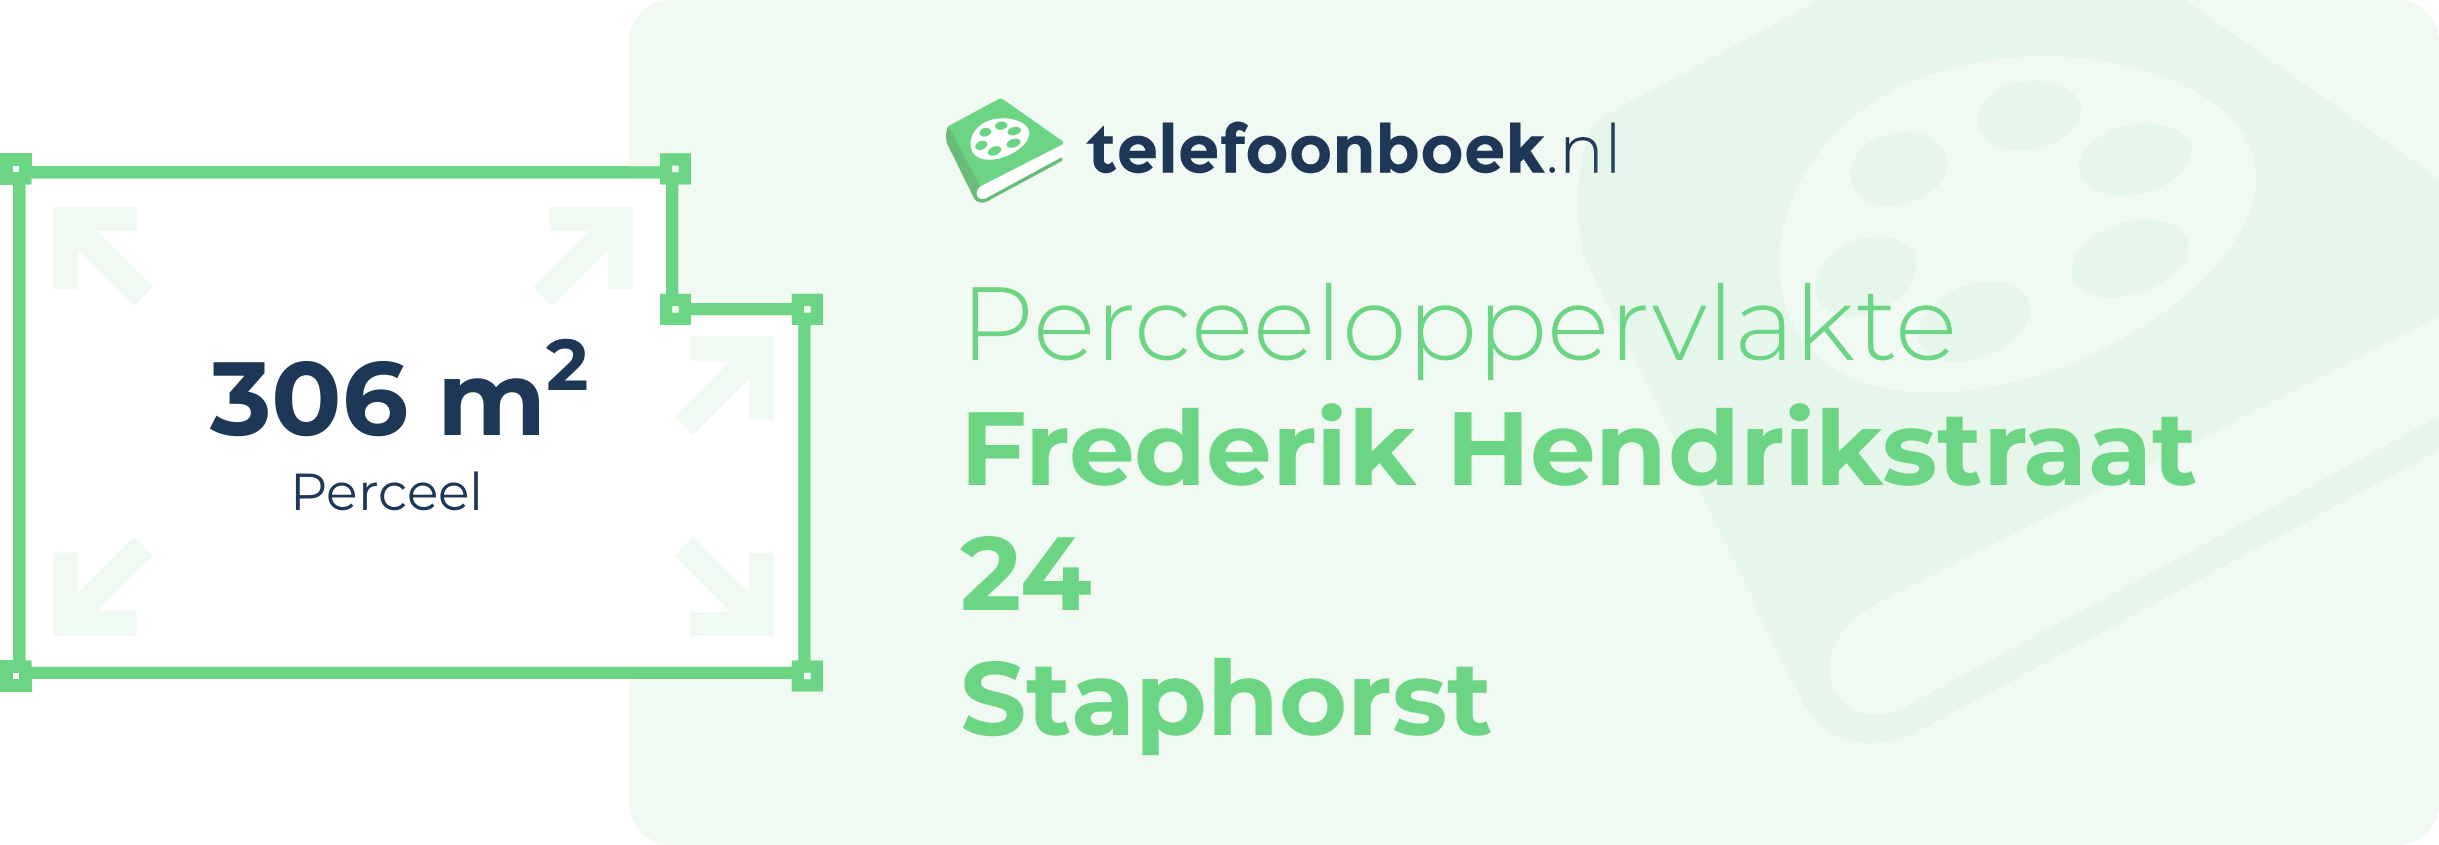 Perceeloppervlakte Frederik Hendrikstraat 24 Staphorst